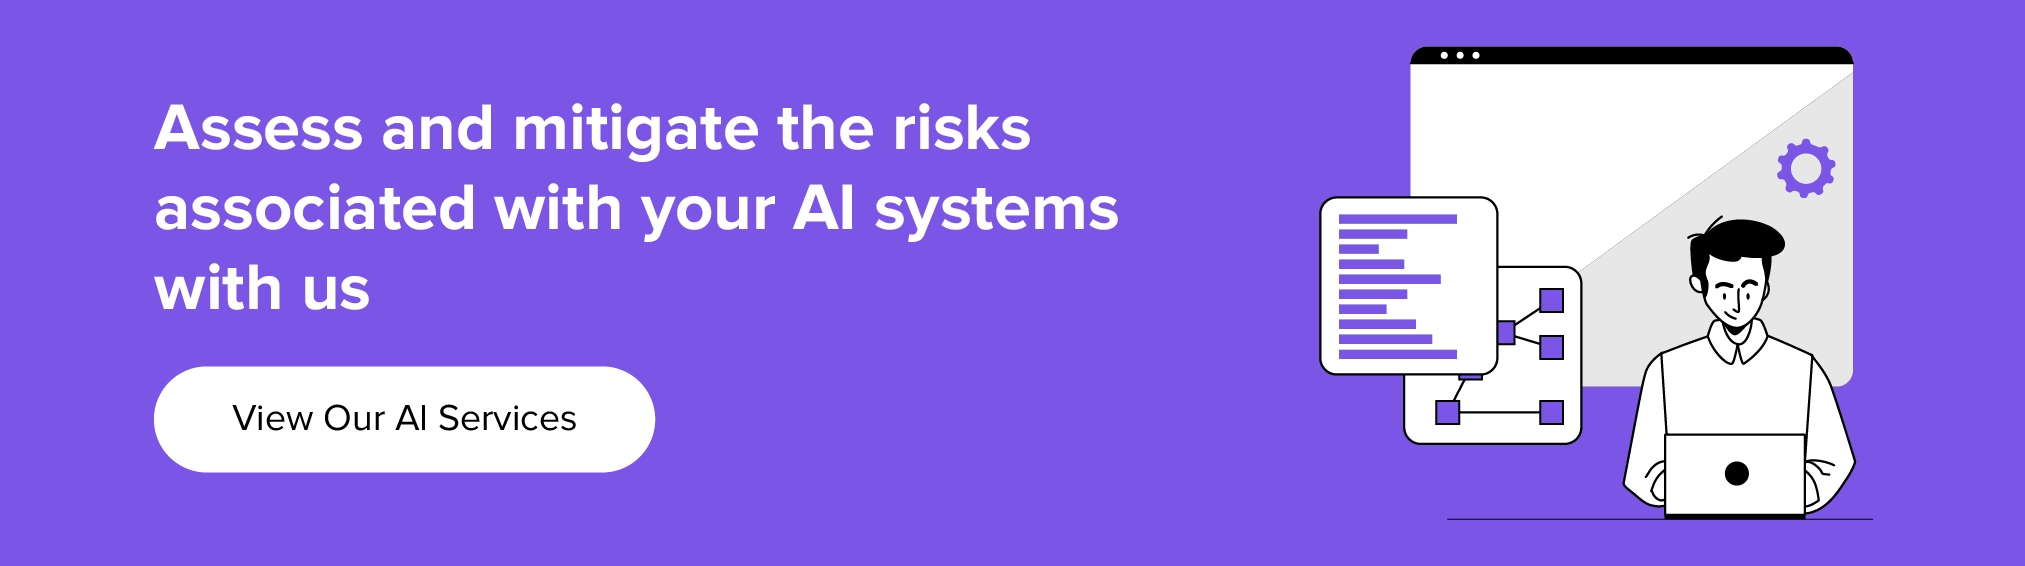 сотрудничайте с нами для оценки и снижения рисков, связанных с вашей системой искусственного интеллекта.